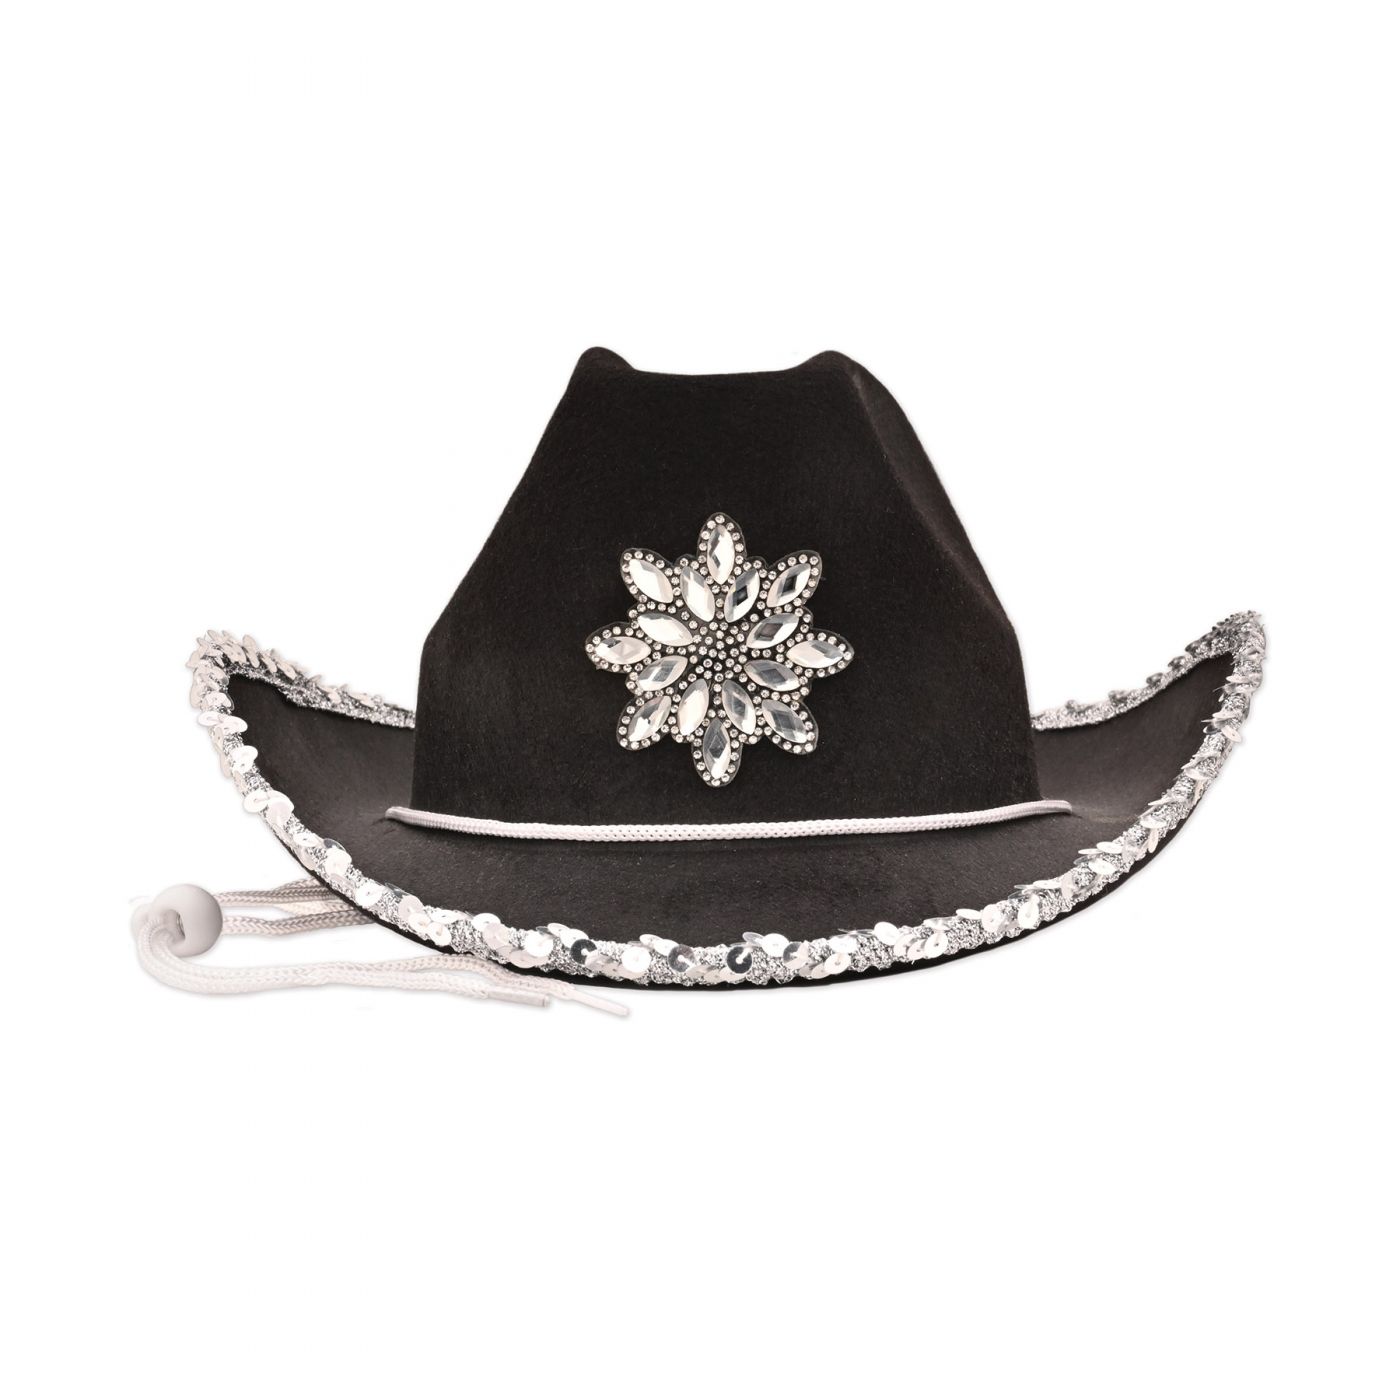 Black Felt Cowgirl Hat w/Gemstones (6) image